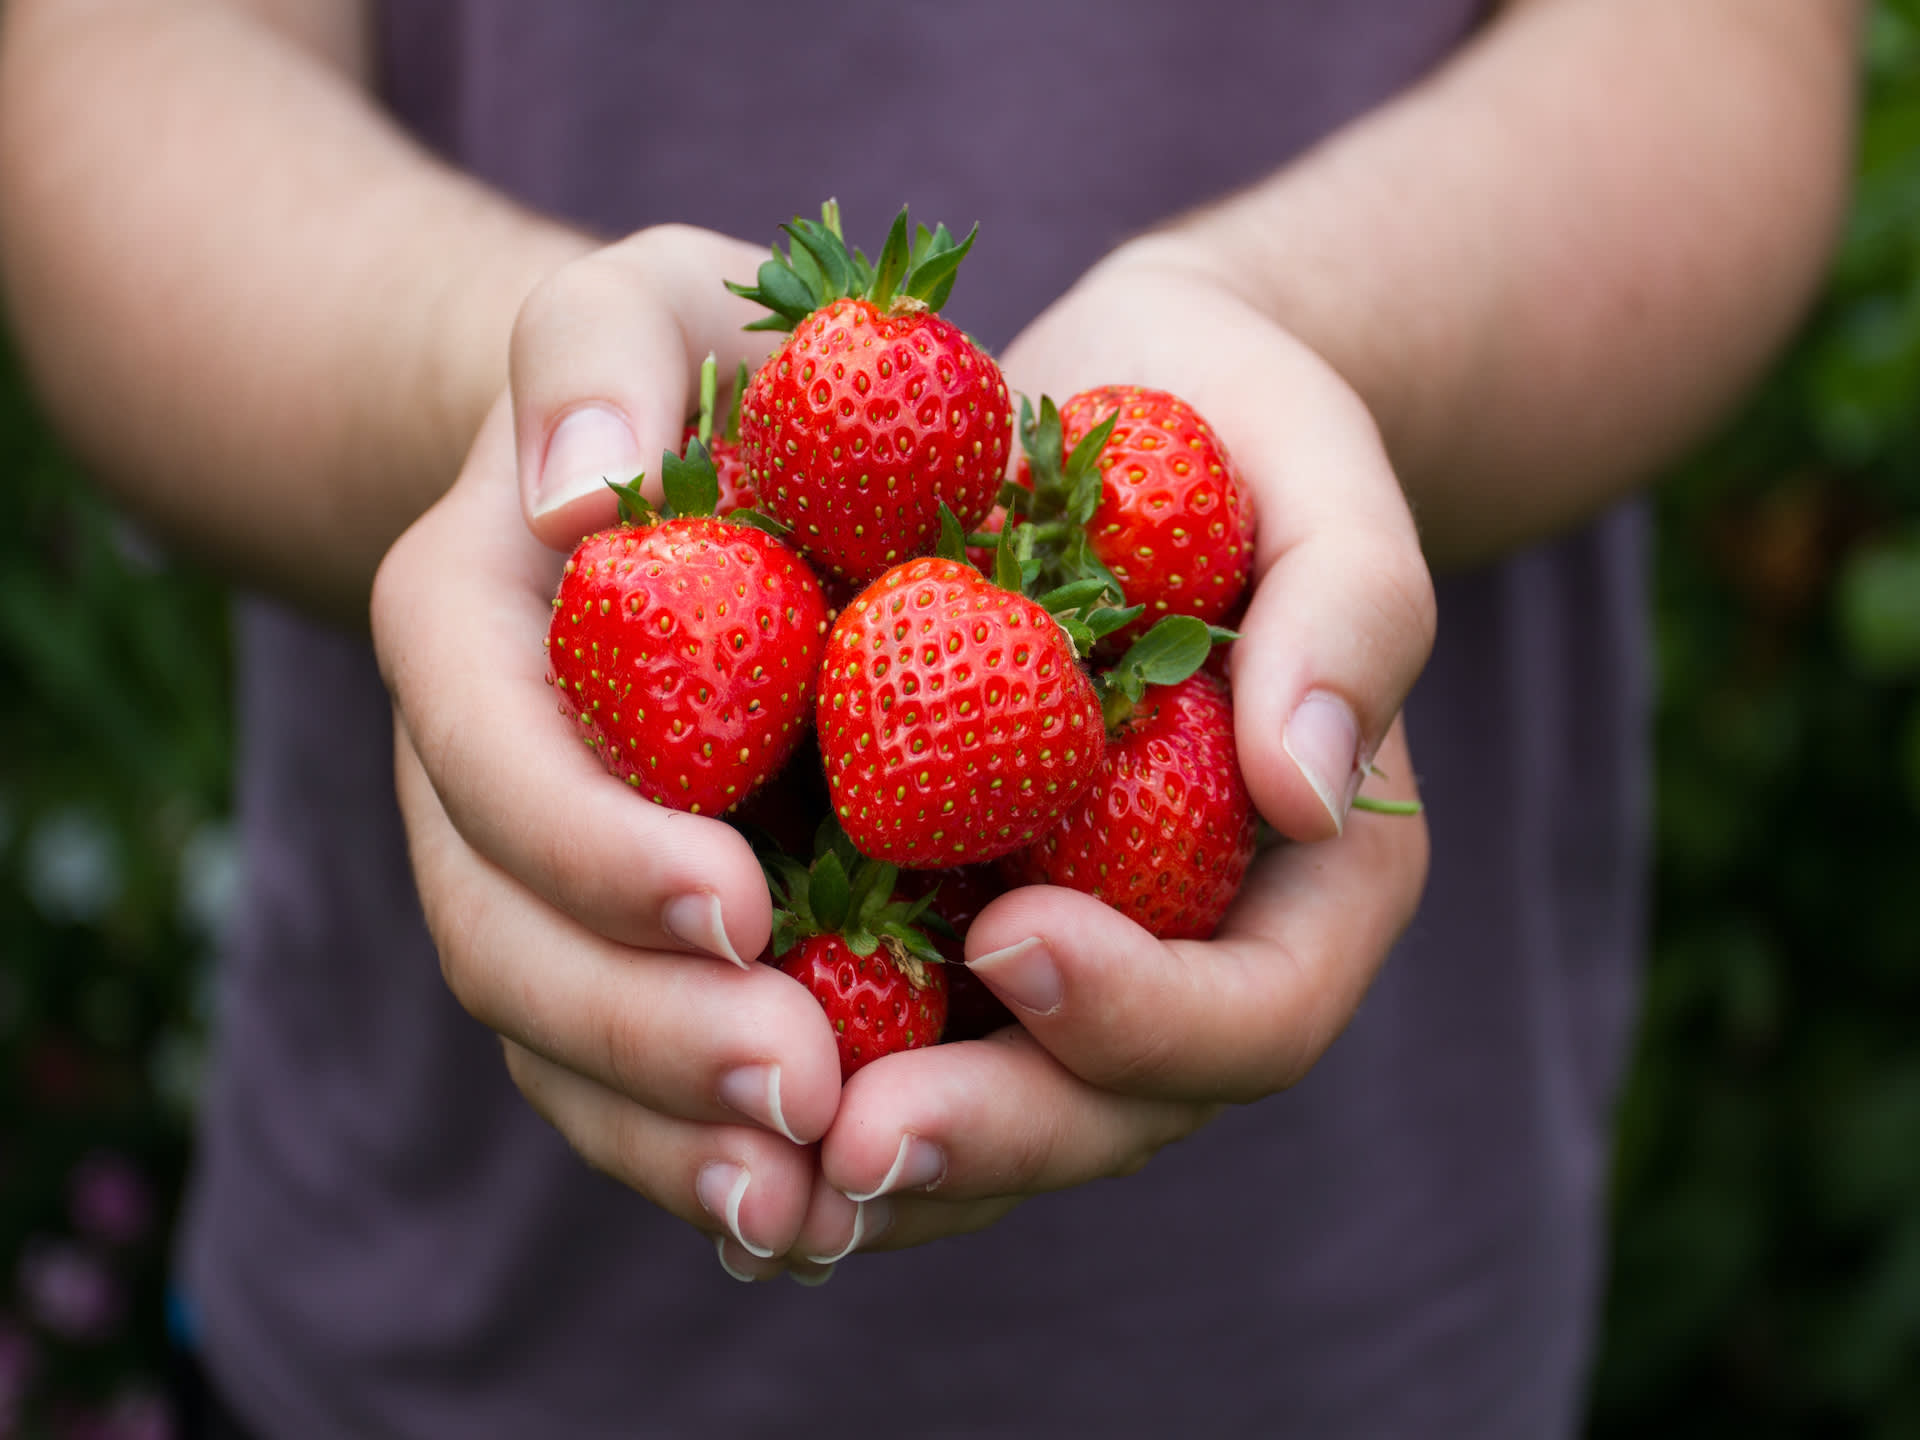 strawberries in hands